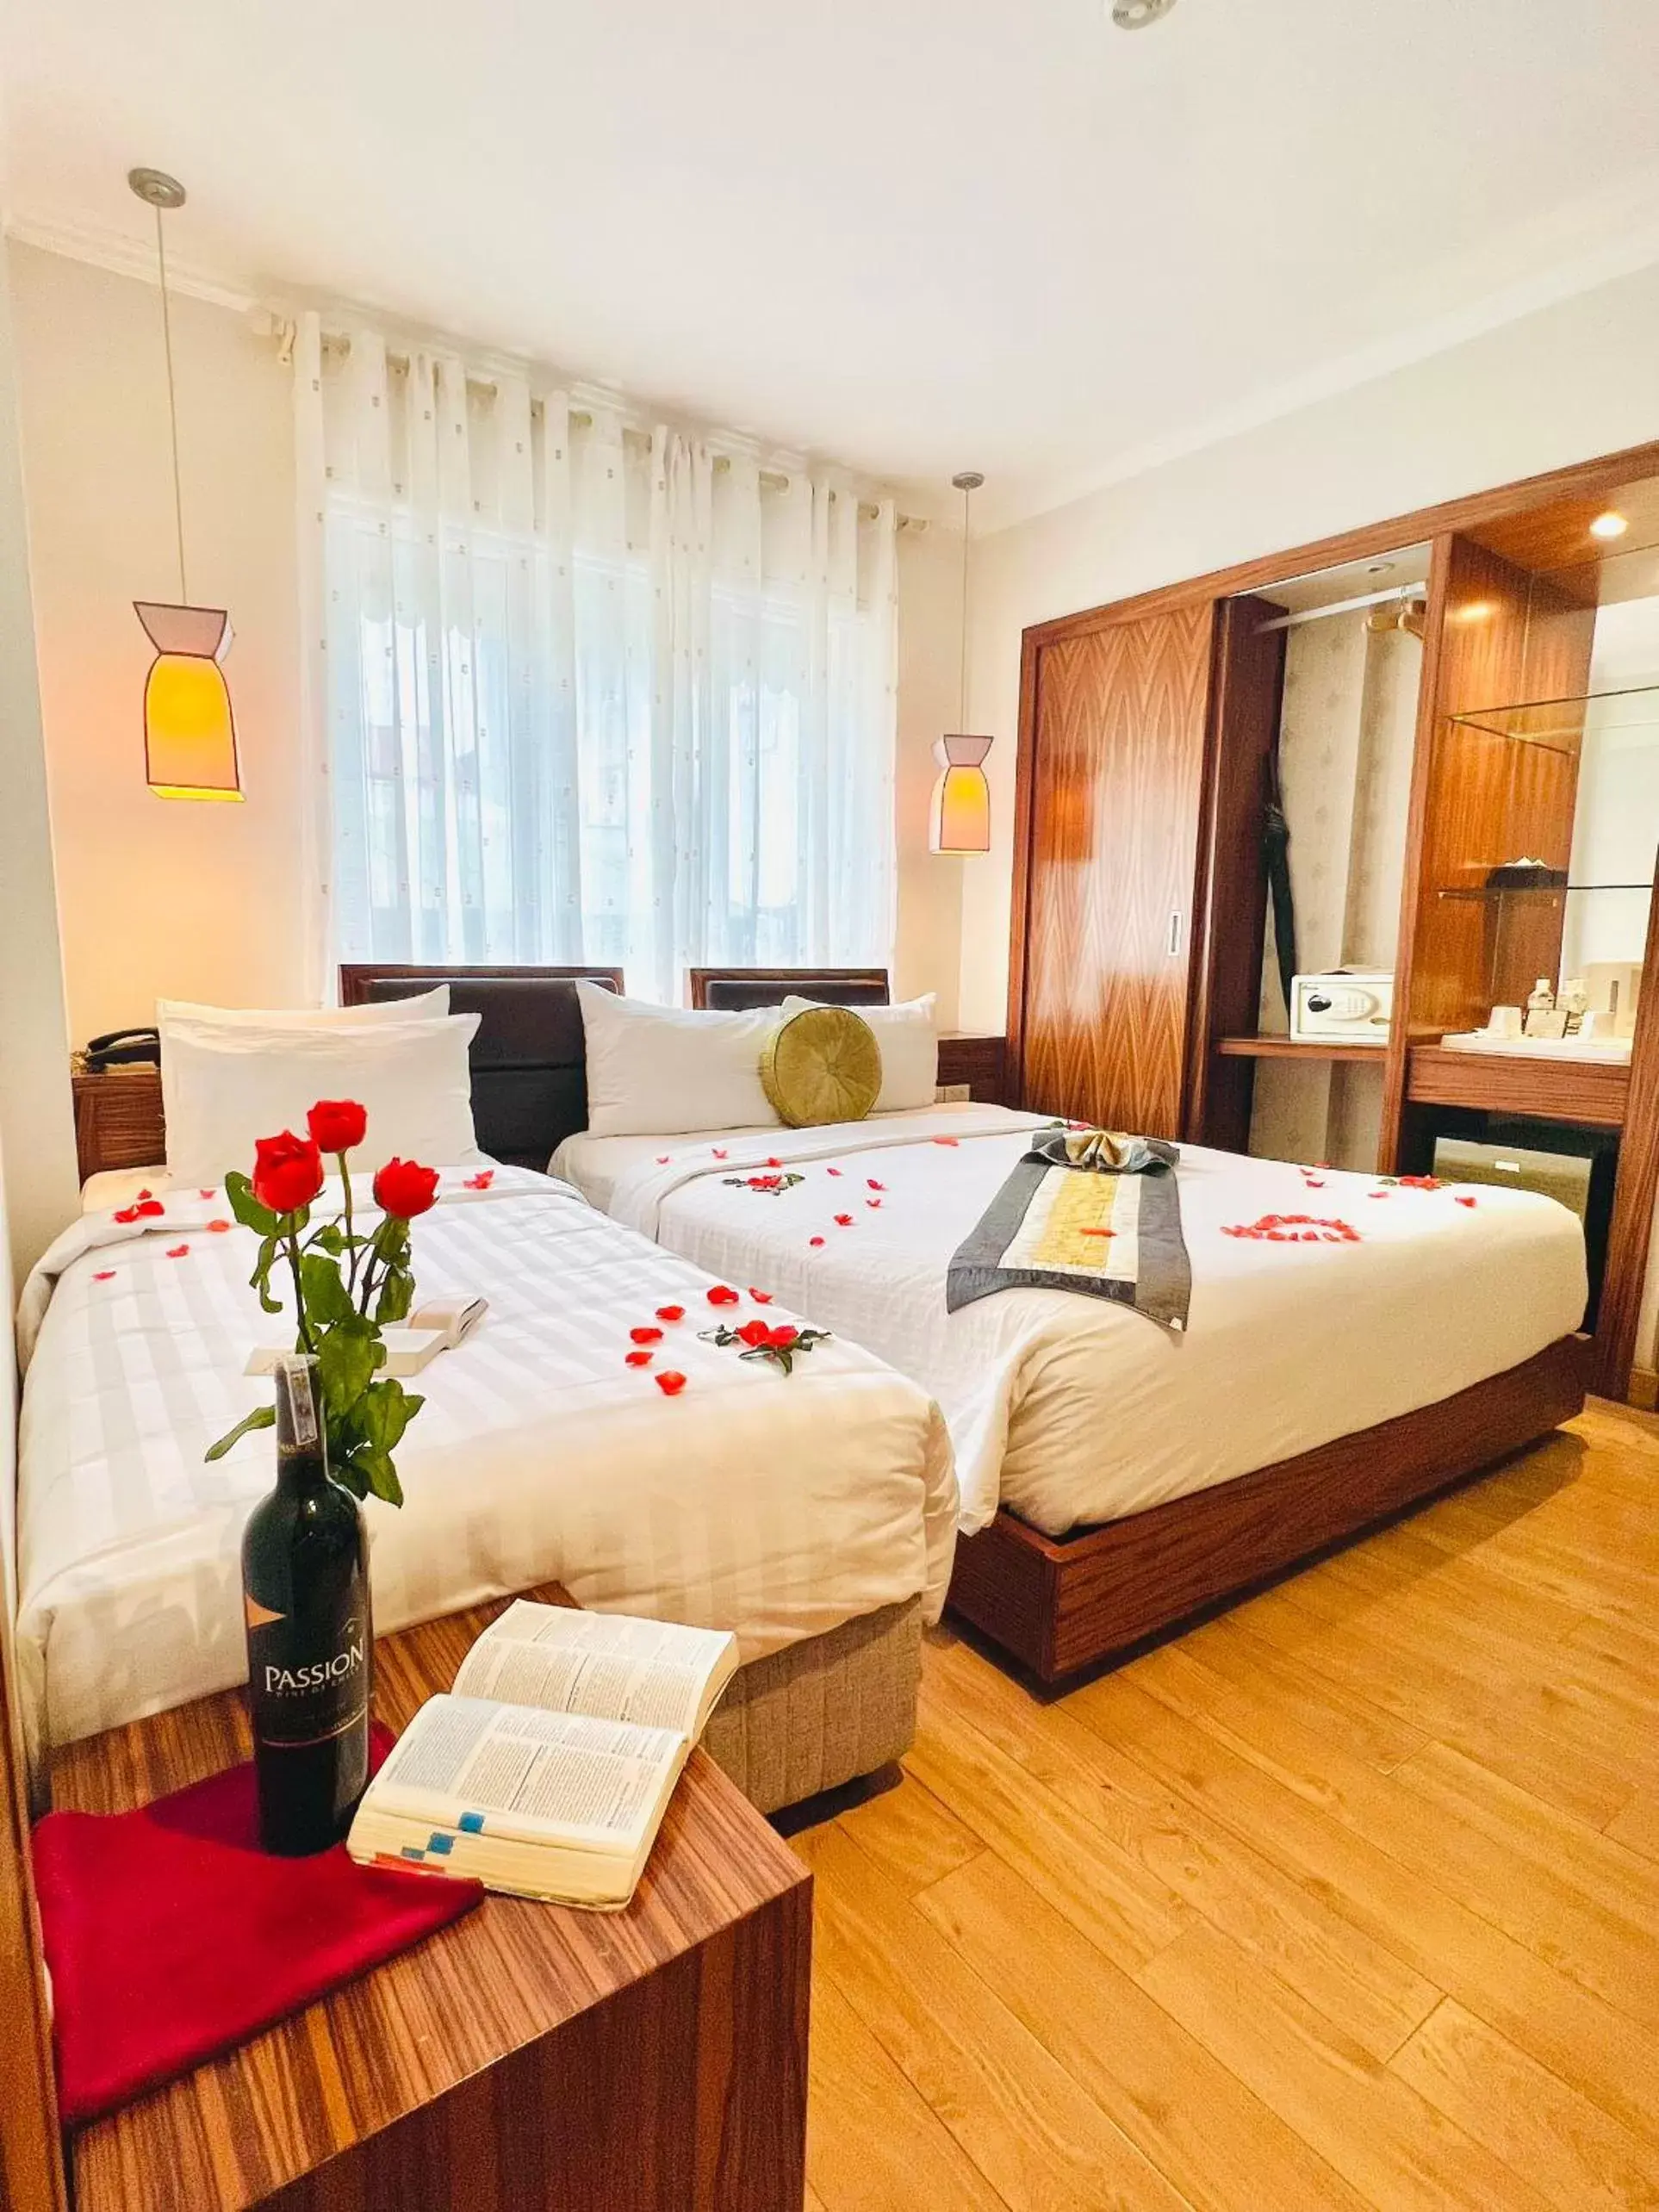 Bed in Elite Central Hotel Hanoi